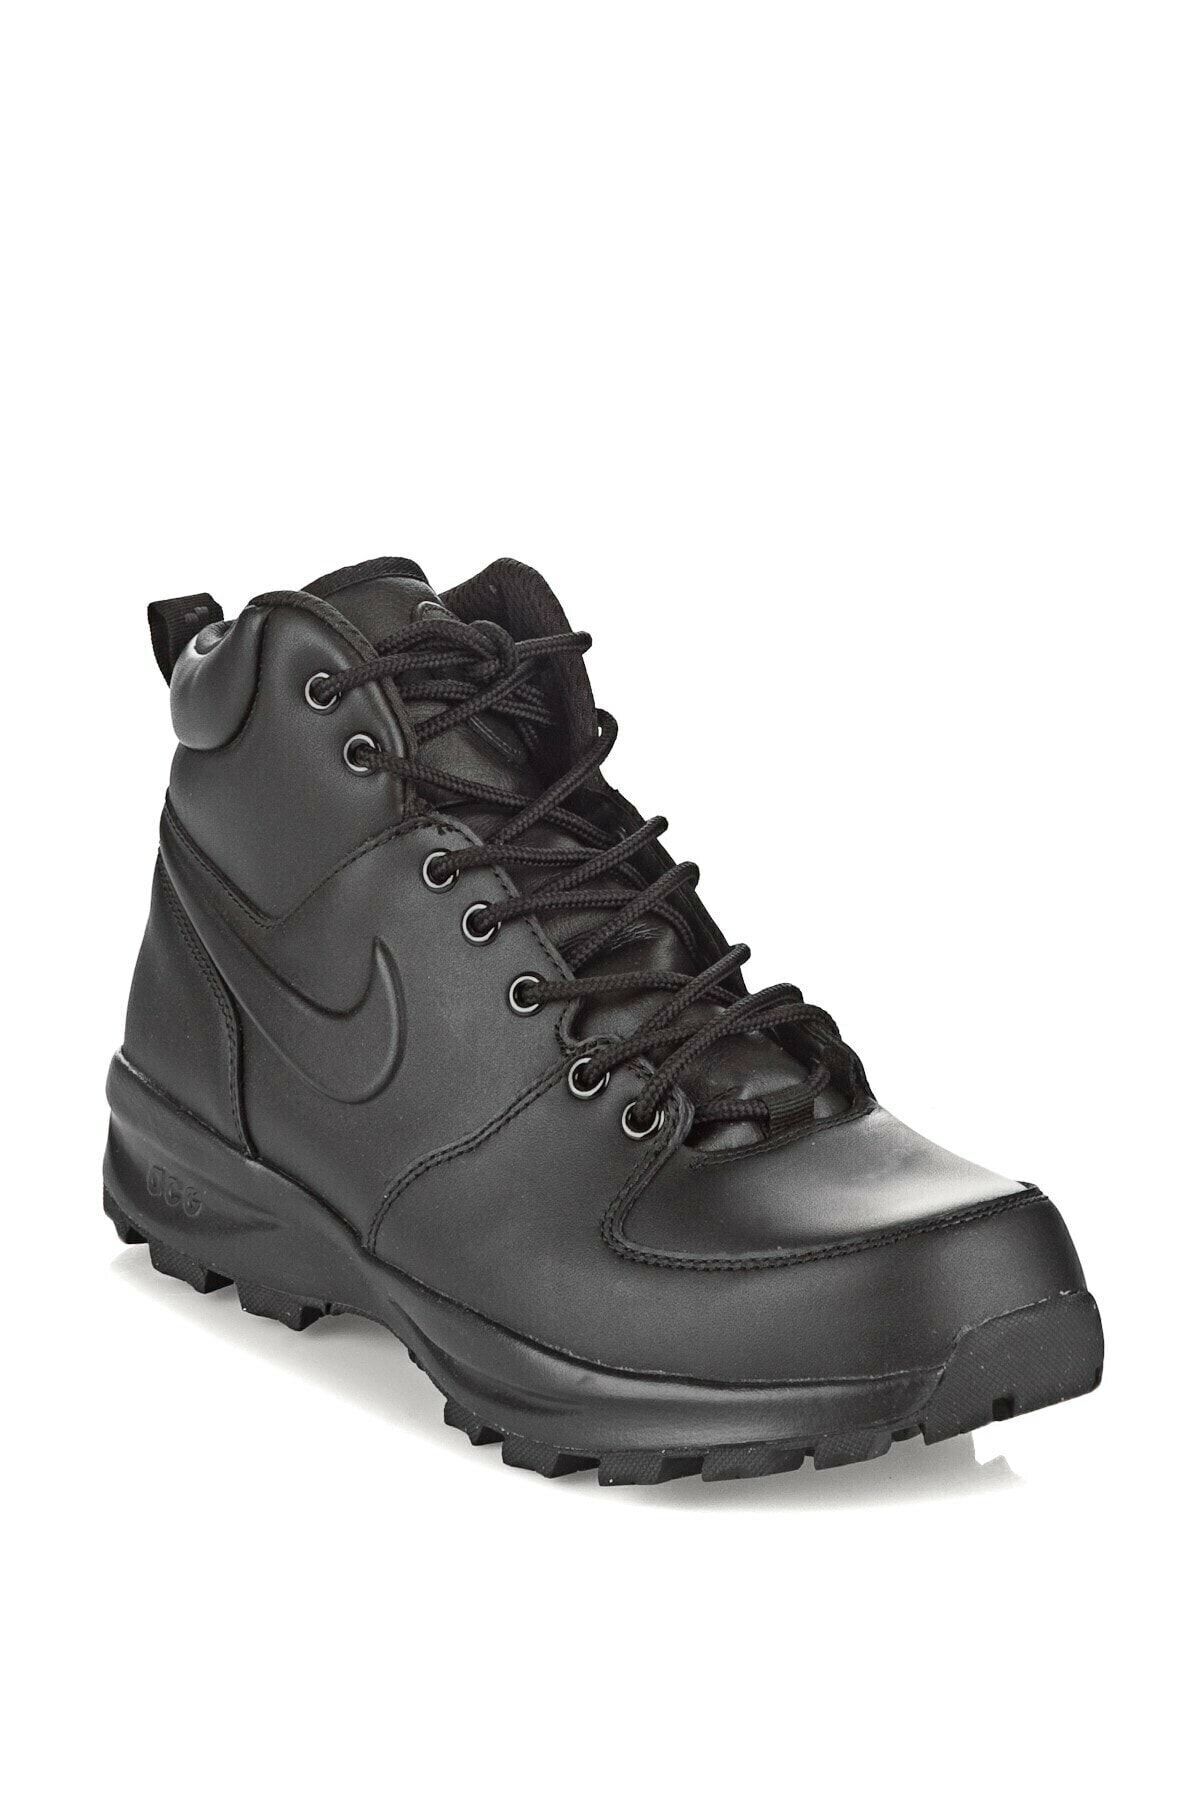 Nike Nıke Manoa Leather Erkek Bot 454350-003